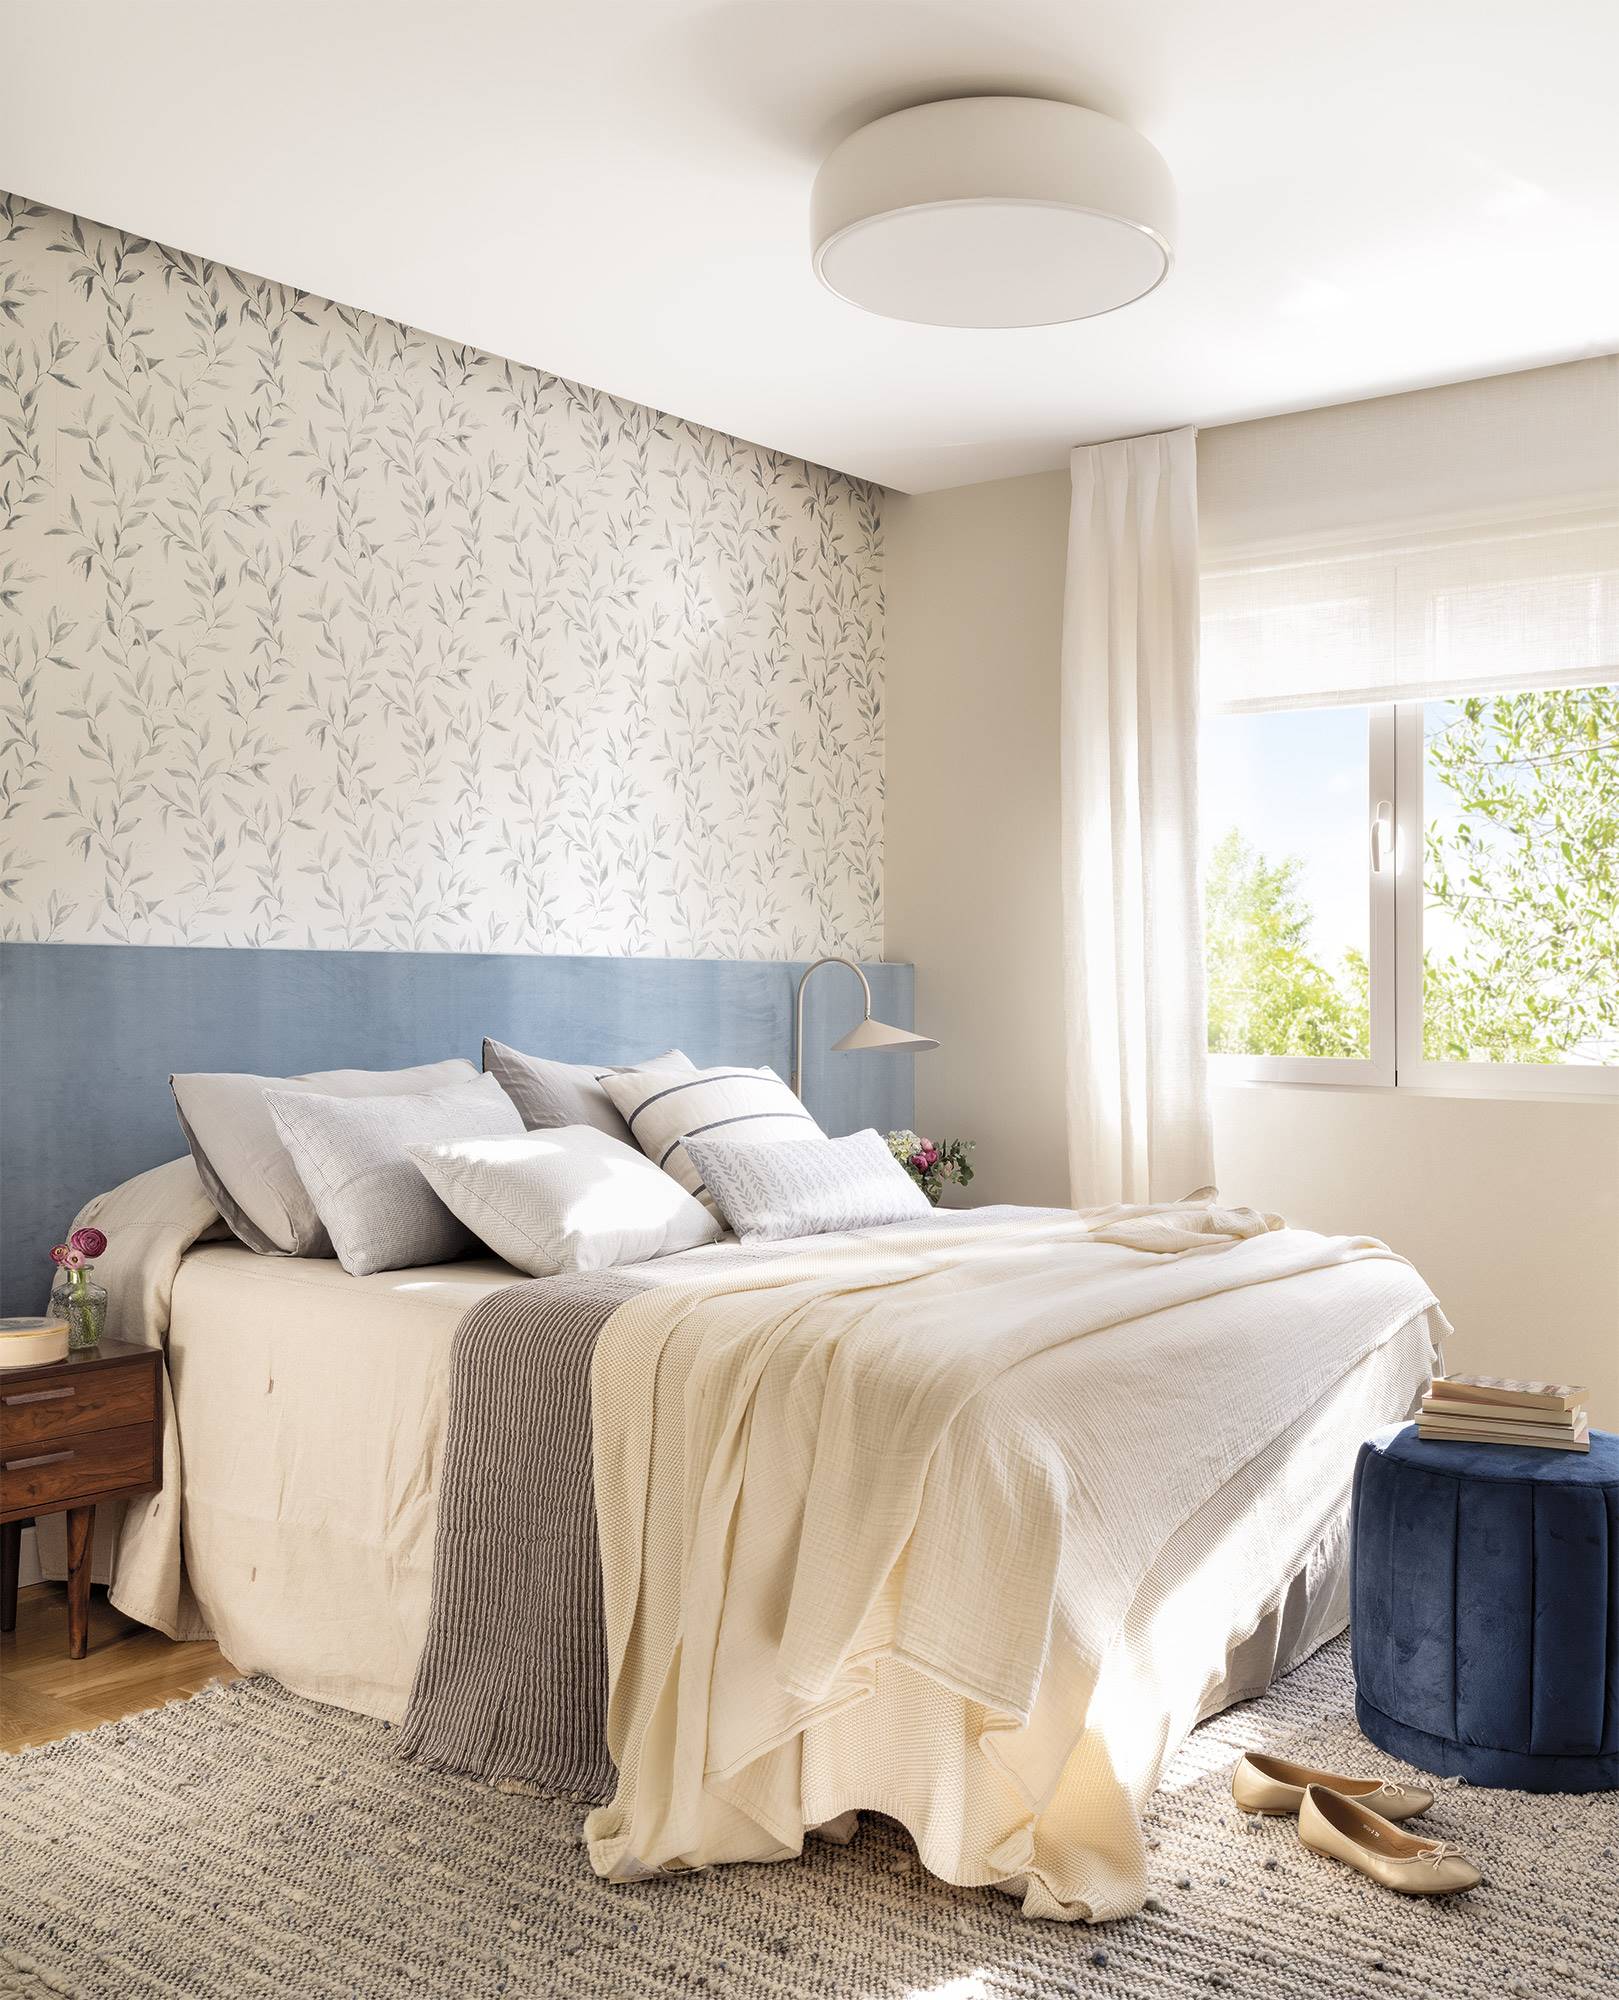 Dormitorio moderno con papel pintado floral y cabecero azul PanoFER8239b